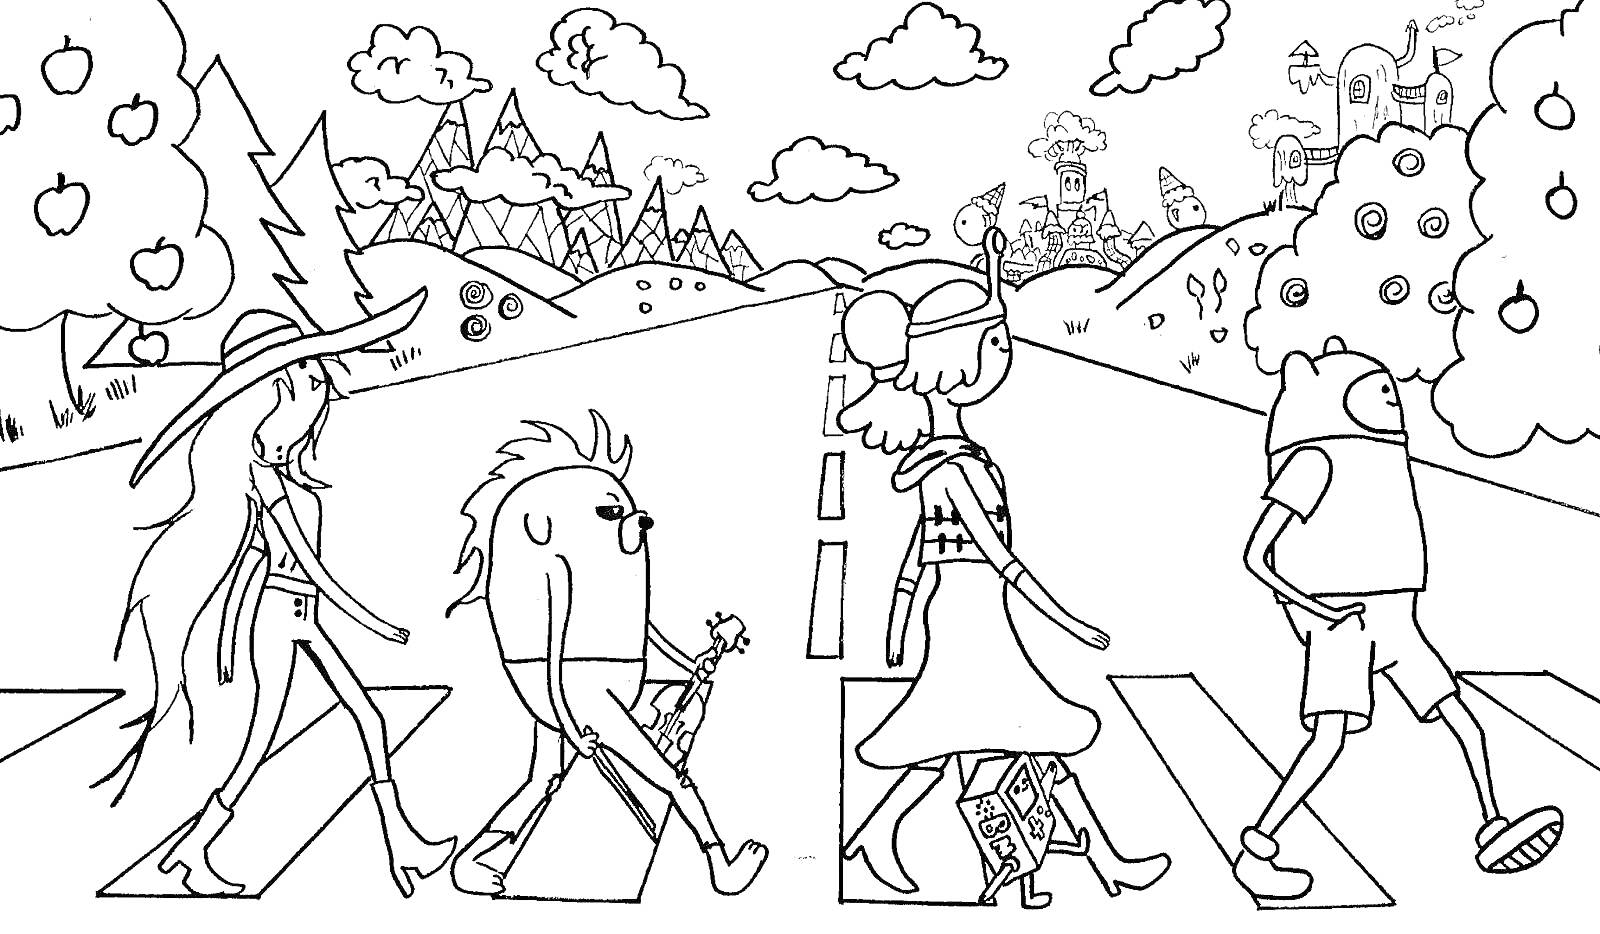 Поход персонажей Время приключений по пешеходному переходу на фоне природы с деревьями, горами и облаками, на дальнем плане ледяной замок.